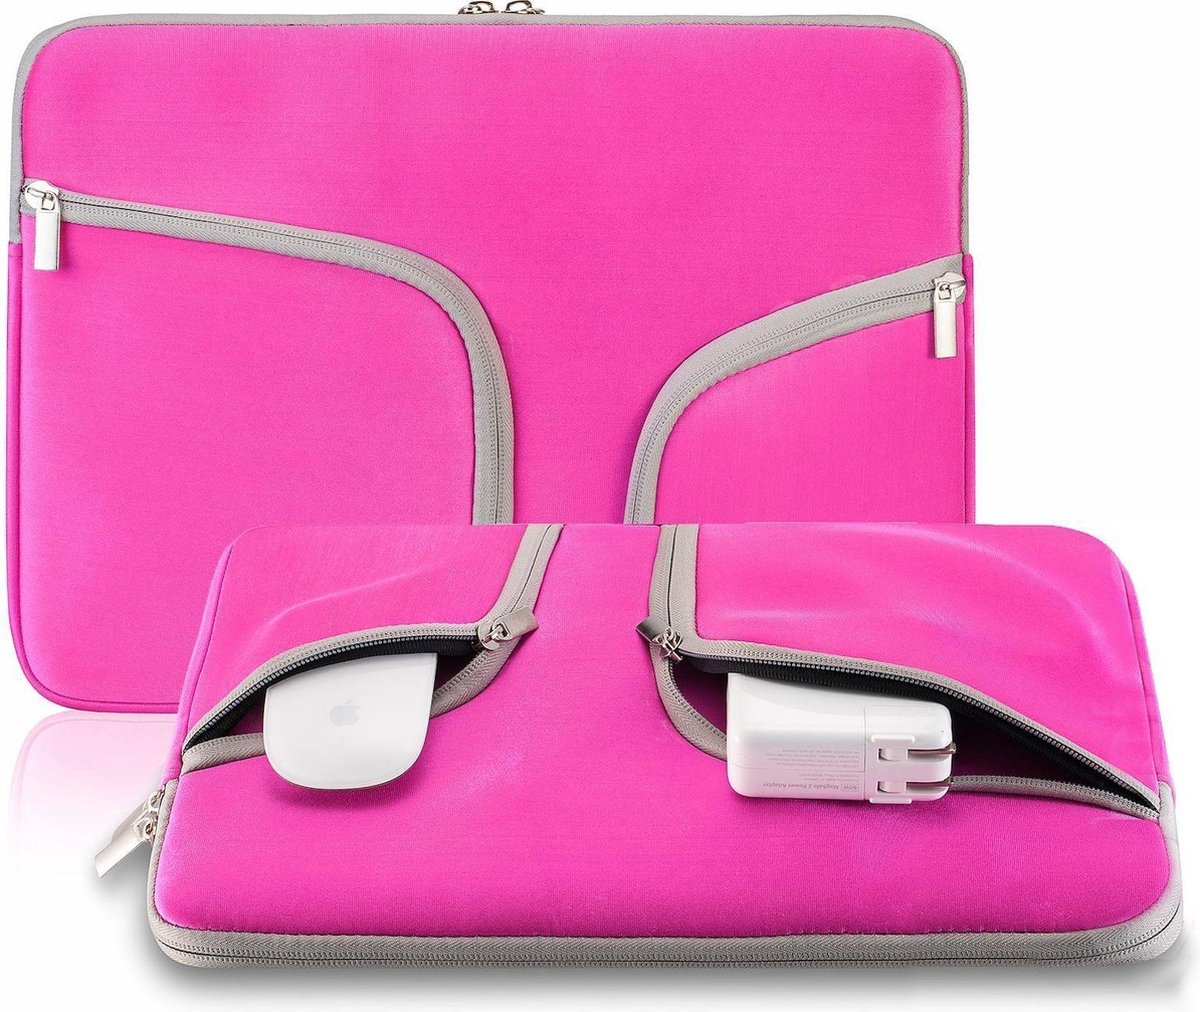 Macbook Sleeve Voor MacBook Air 11 inch - Laptoptas - Laptop Sleeve met rits - Roze